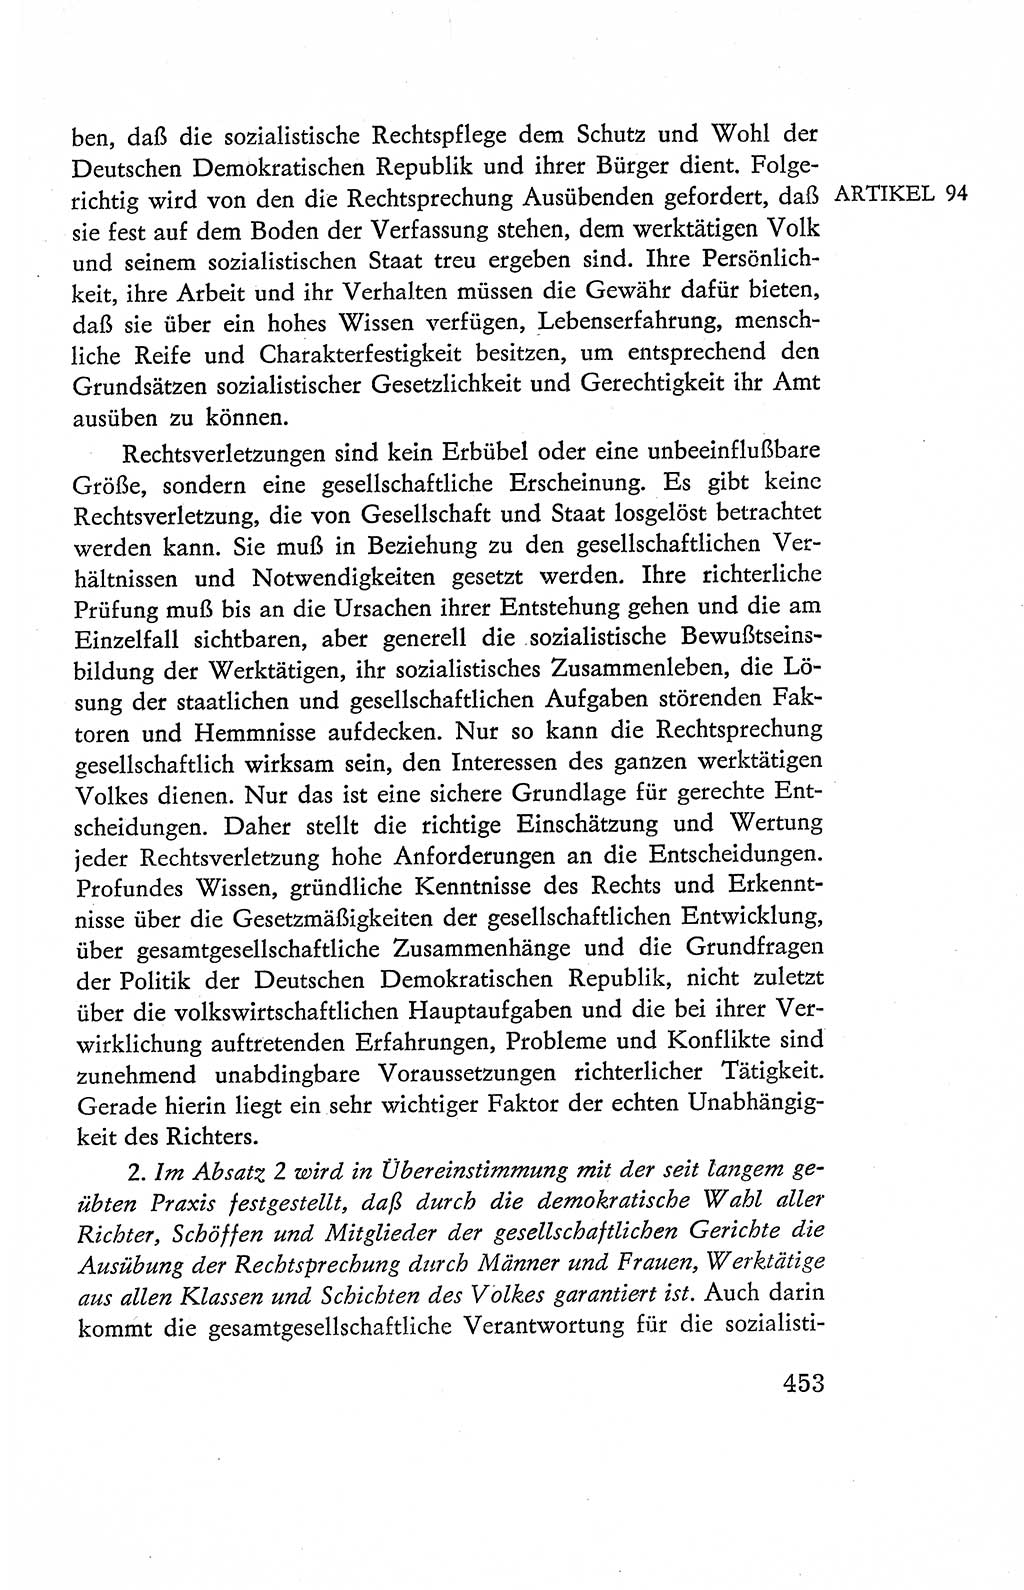 Verfassung der Deutschen Demokratischen Republik (DDR), Dokumente, Kommentar 1969, Band 2, Seite 453 (Verf. DDR Dok. Komm. 1969, Bd. 2, S. 453)